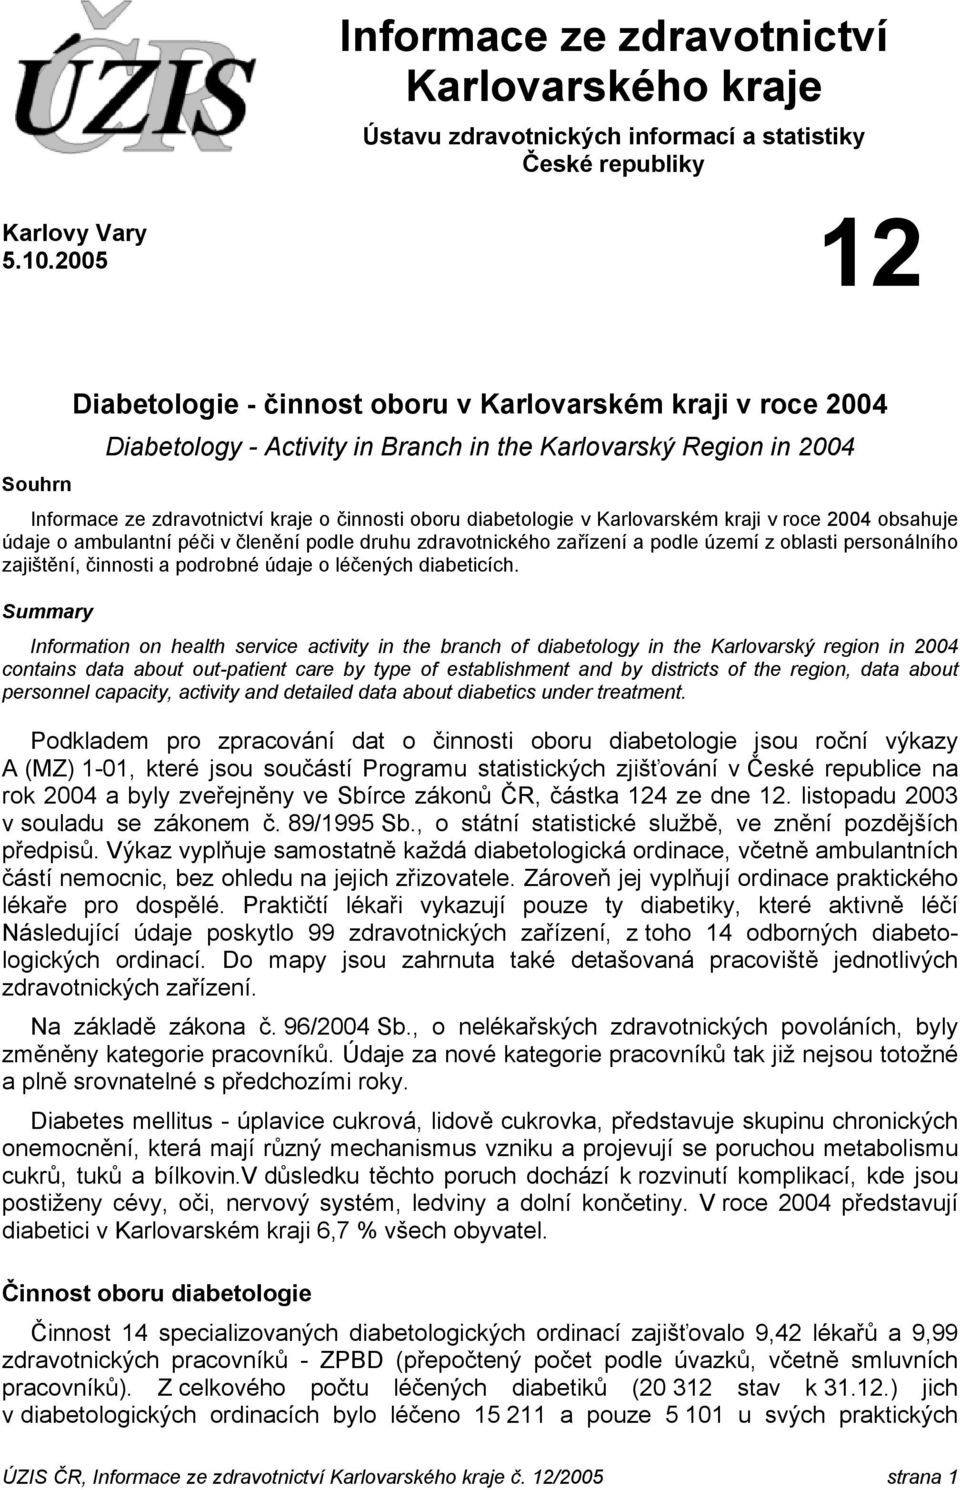 diabetologie v Karlovarském kraji v roce 2004 obsahuje údaje o ambulantní péči v členění podle druhu zdravotnického zařízení a podle území z oblasti personálního zajištění, činnosti a podrobné údaje